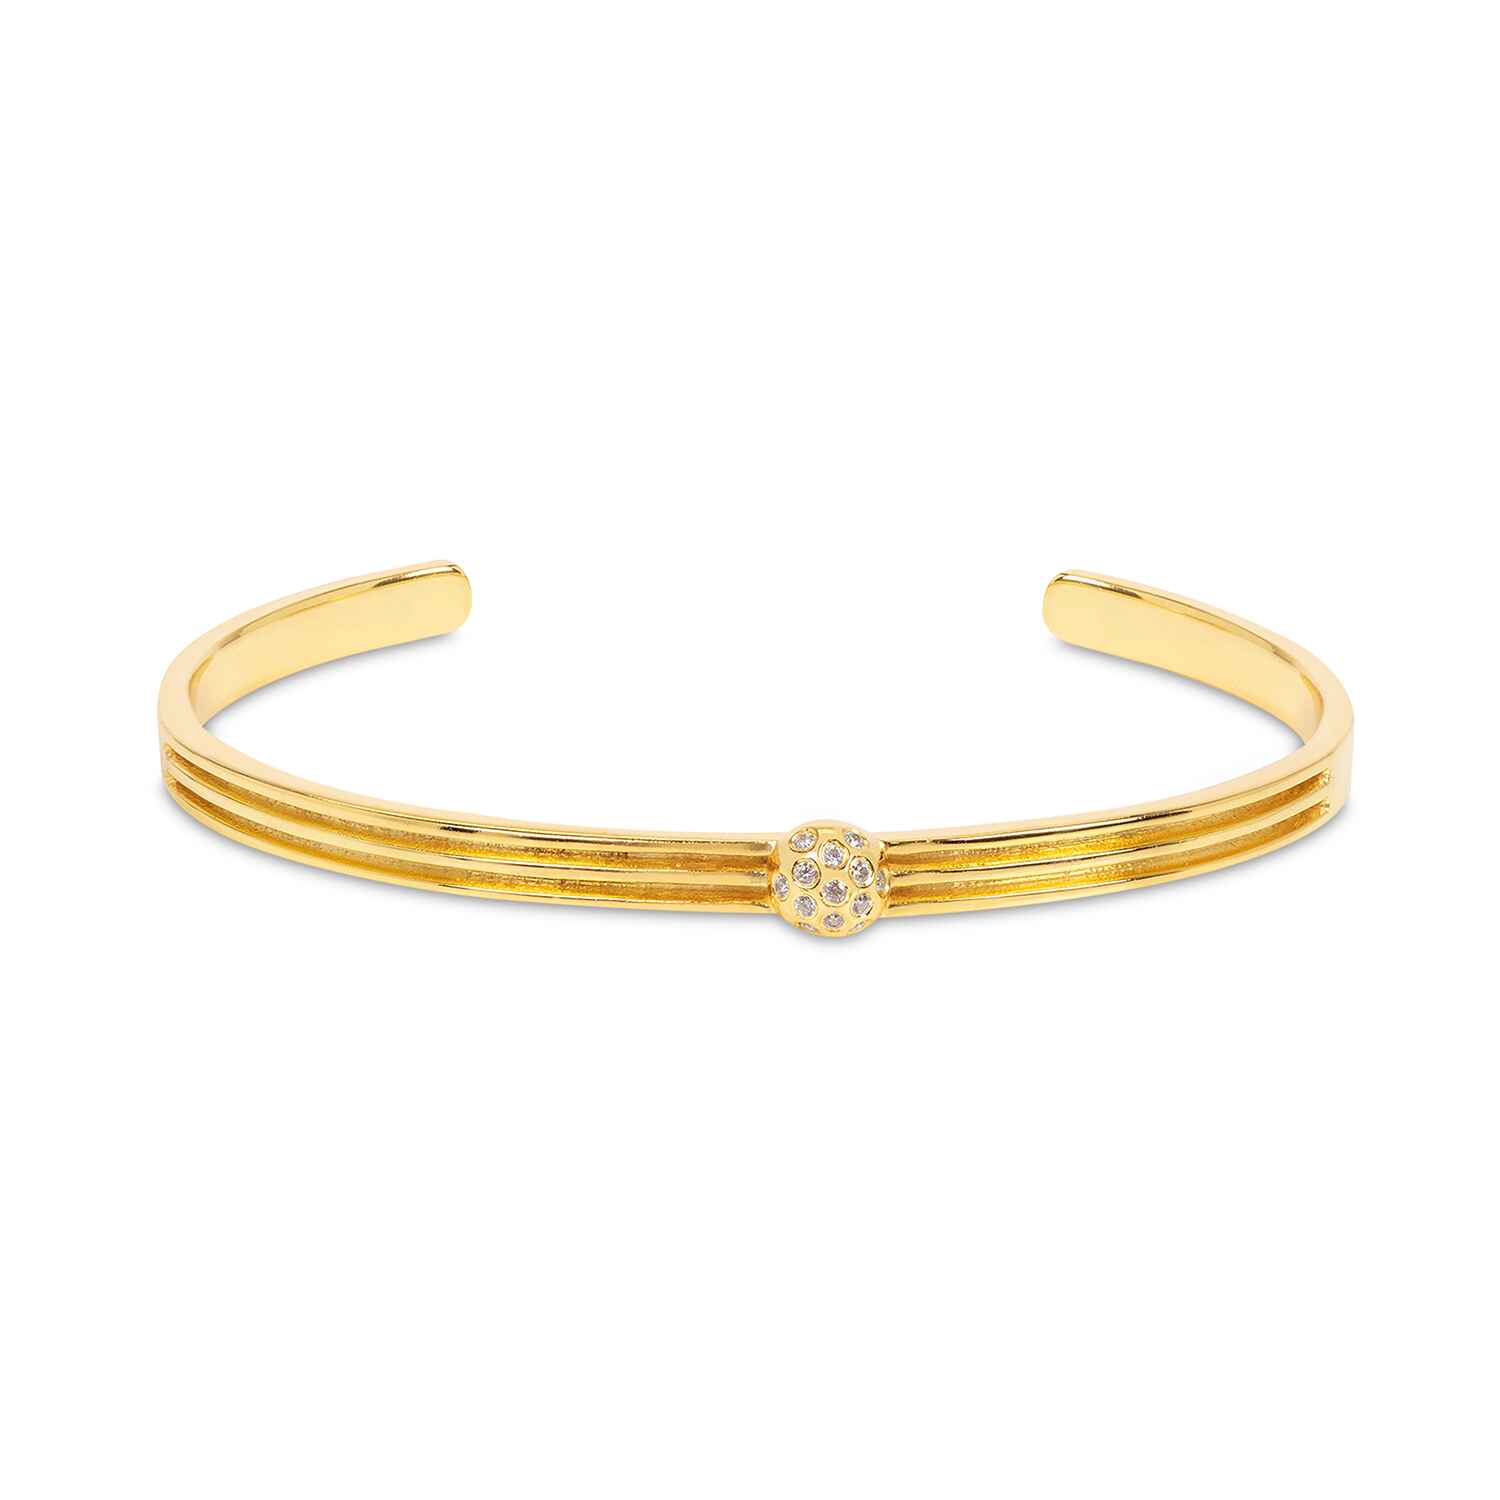 Athena Gold Cuff Bracelet With Diamonds